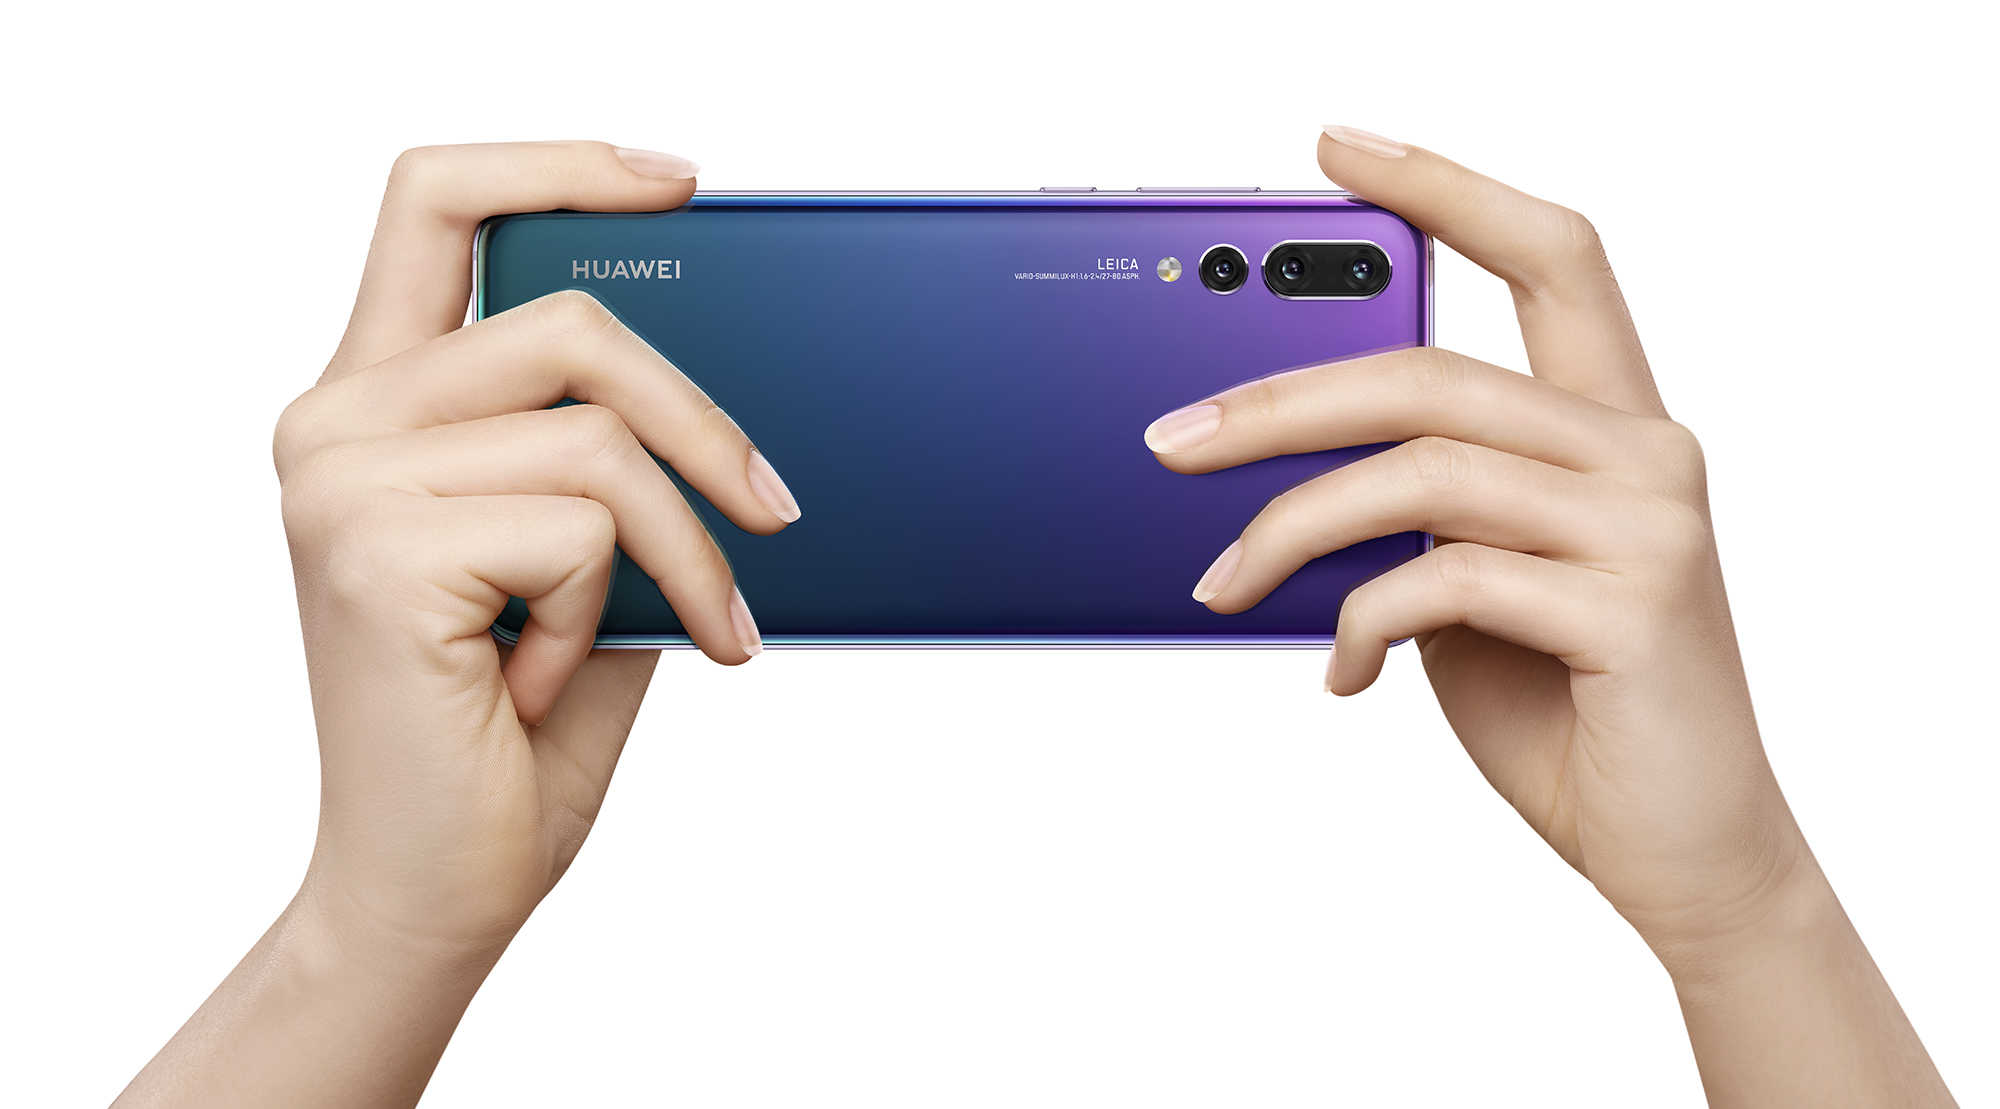 Le flagship 2018 Huawei P20 Pro reçoit une mise à jour majeure EMUI 10.0.0.193 avec de nouvelles fonctionnalités à l'échelle mondiale